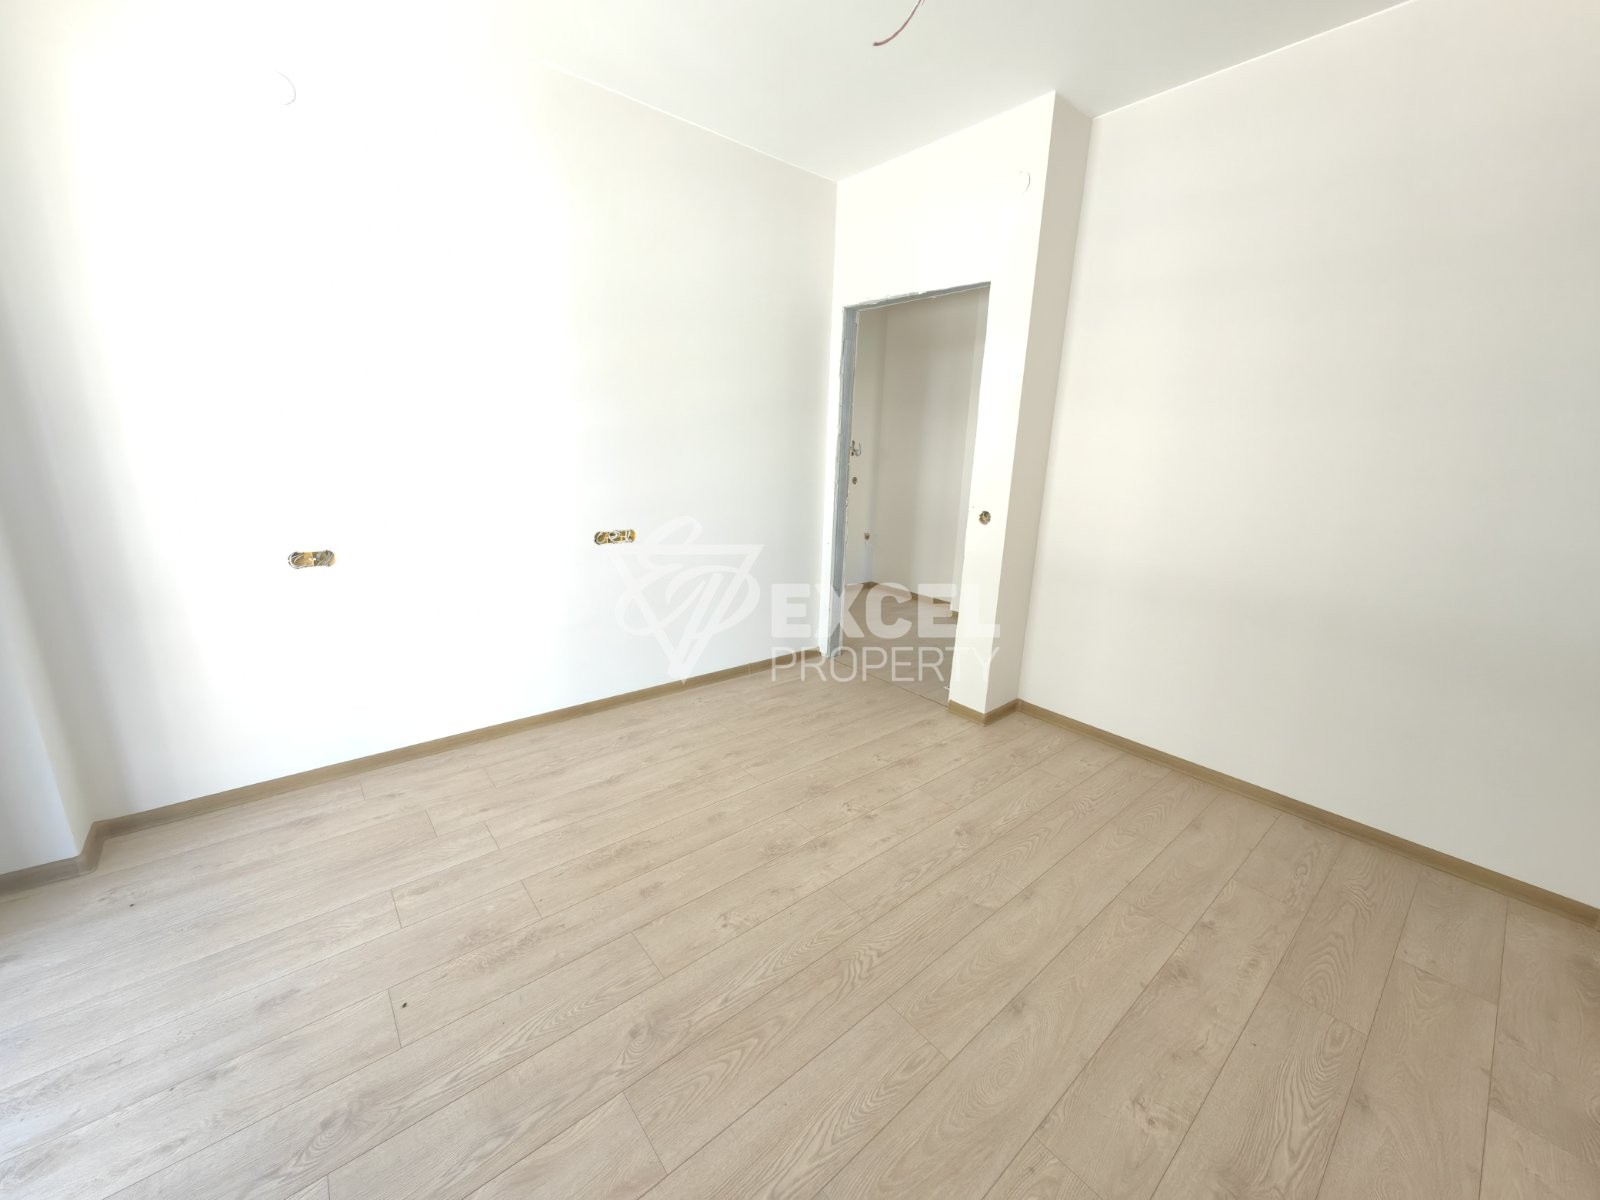 Продается трехкомнатная квартира в новом жилом доме, Банско